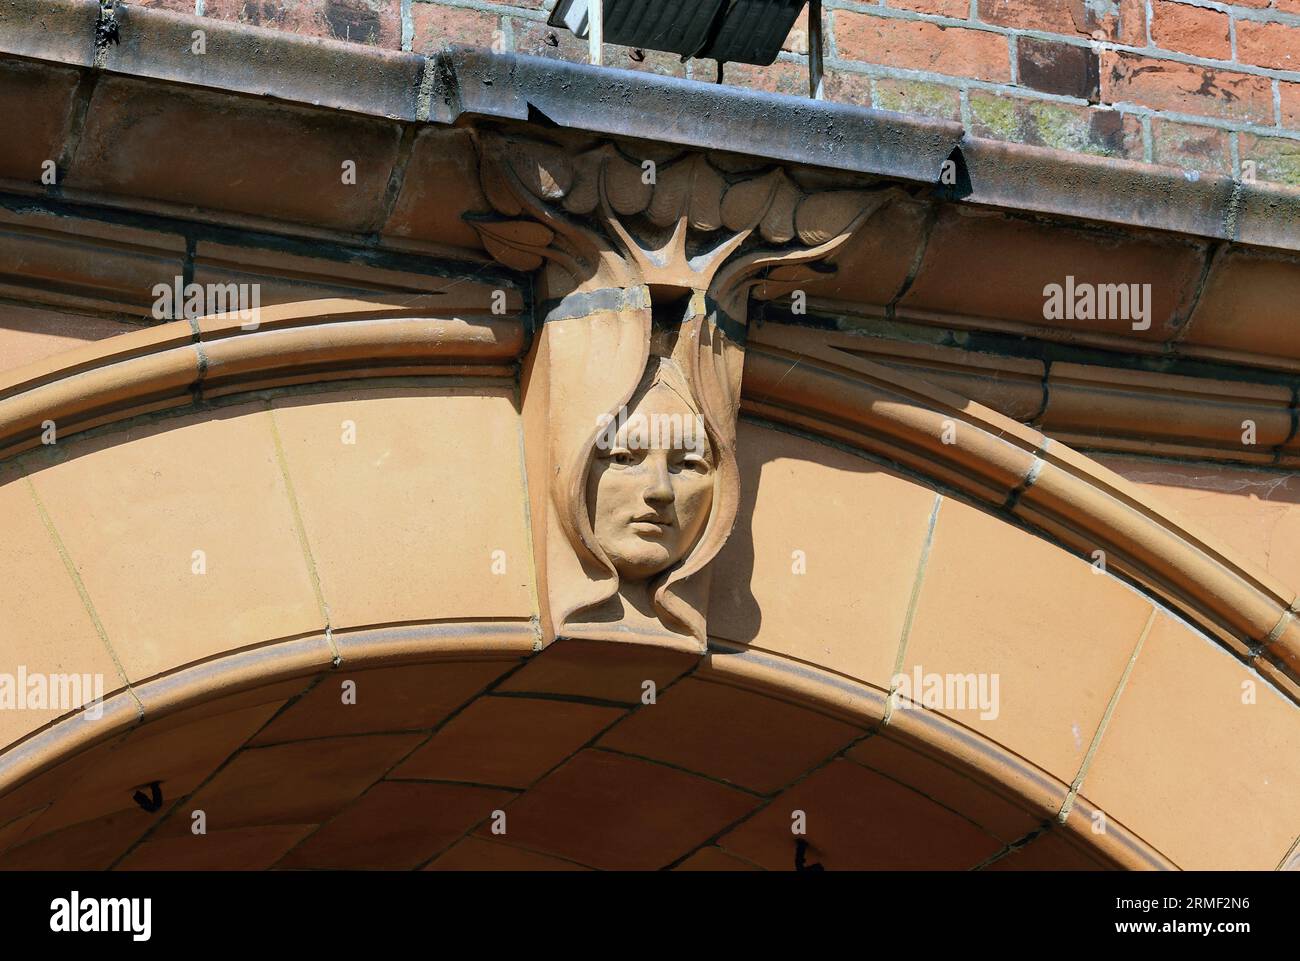 Nahaufnahme der Fassade des Great Yarmouth Hippodrome, die einen Bogenpfeiler in Form eines Jugendstilkopfes zeigt, der von Blättern eingerahmt ist. Stockfoto